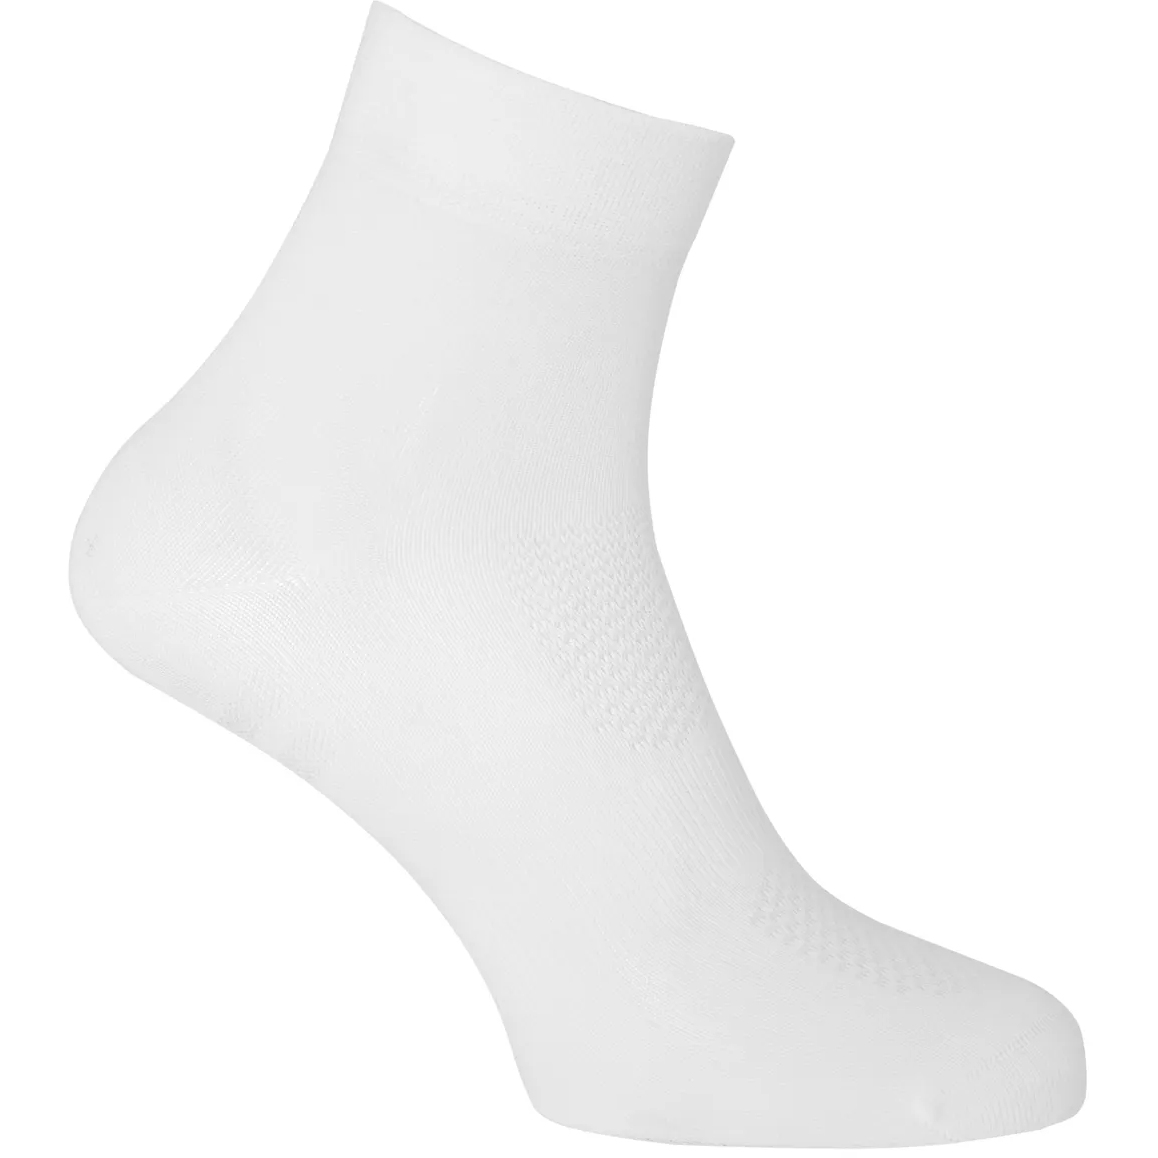 Produktbild von AGU Essential Medium Socken - 2er Pack - weiß